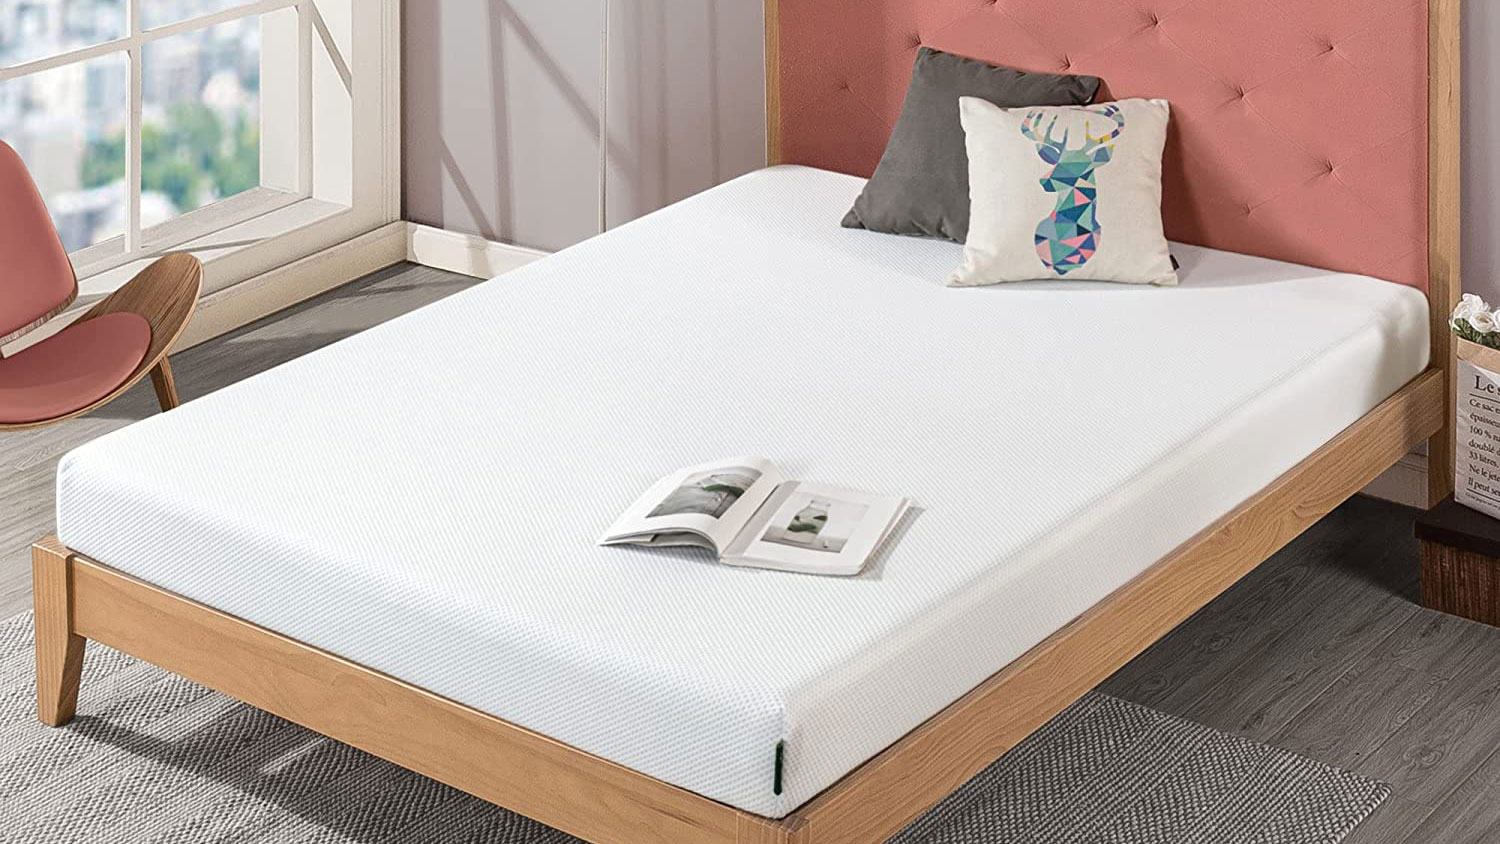 amazon mattress covers full sizewaterproof